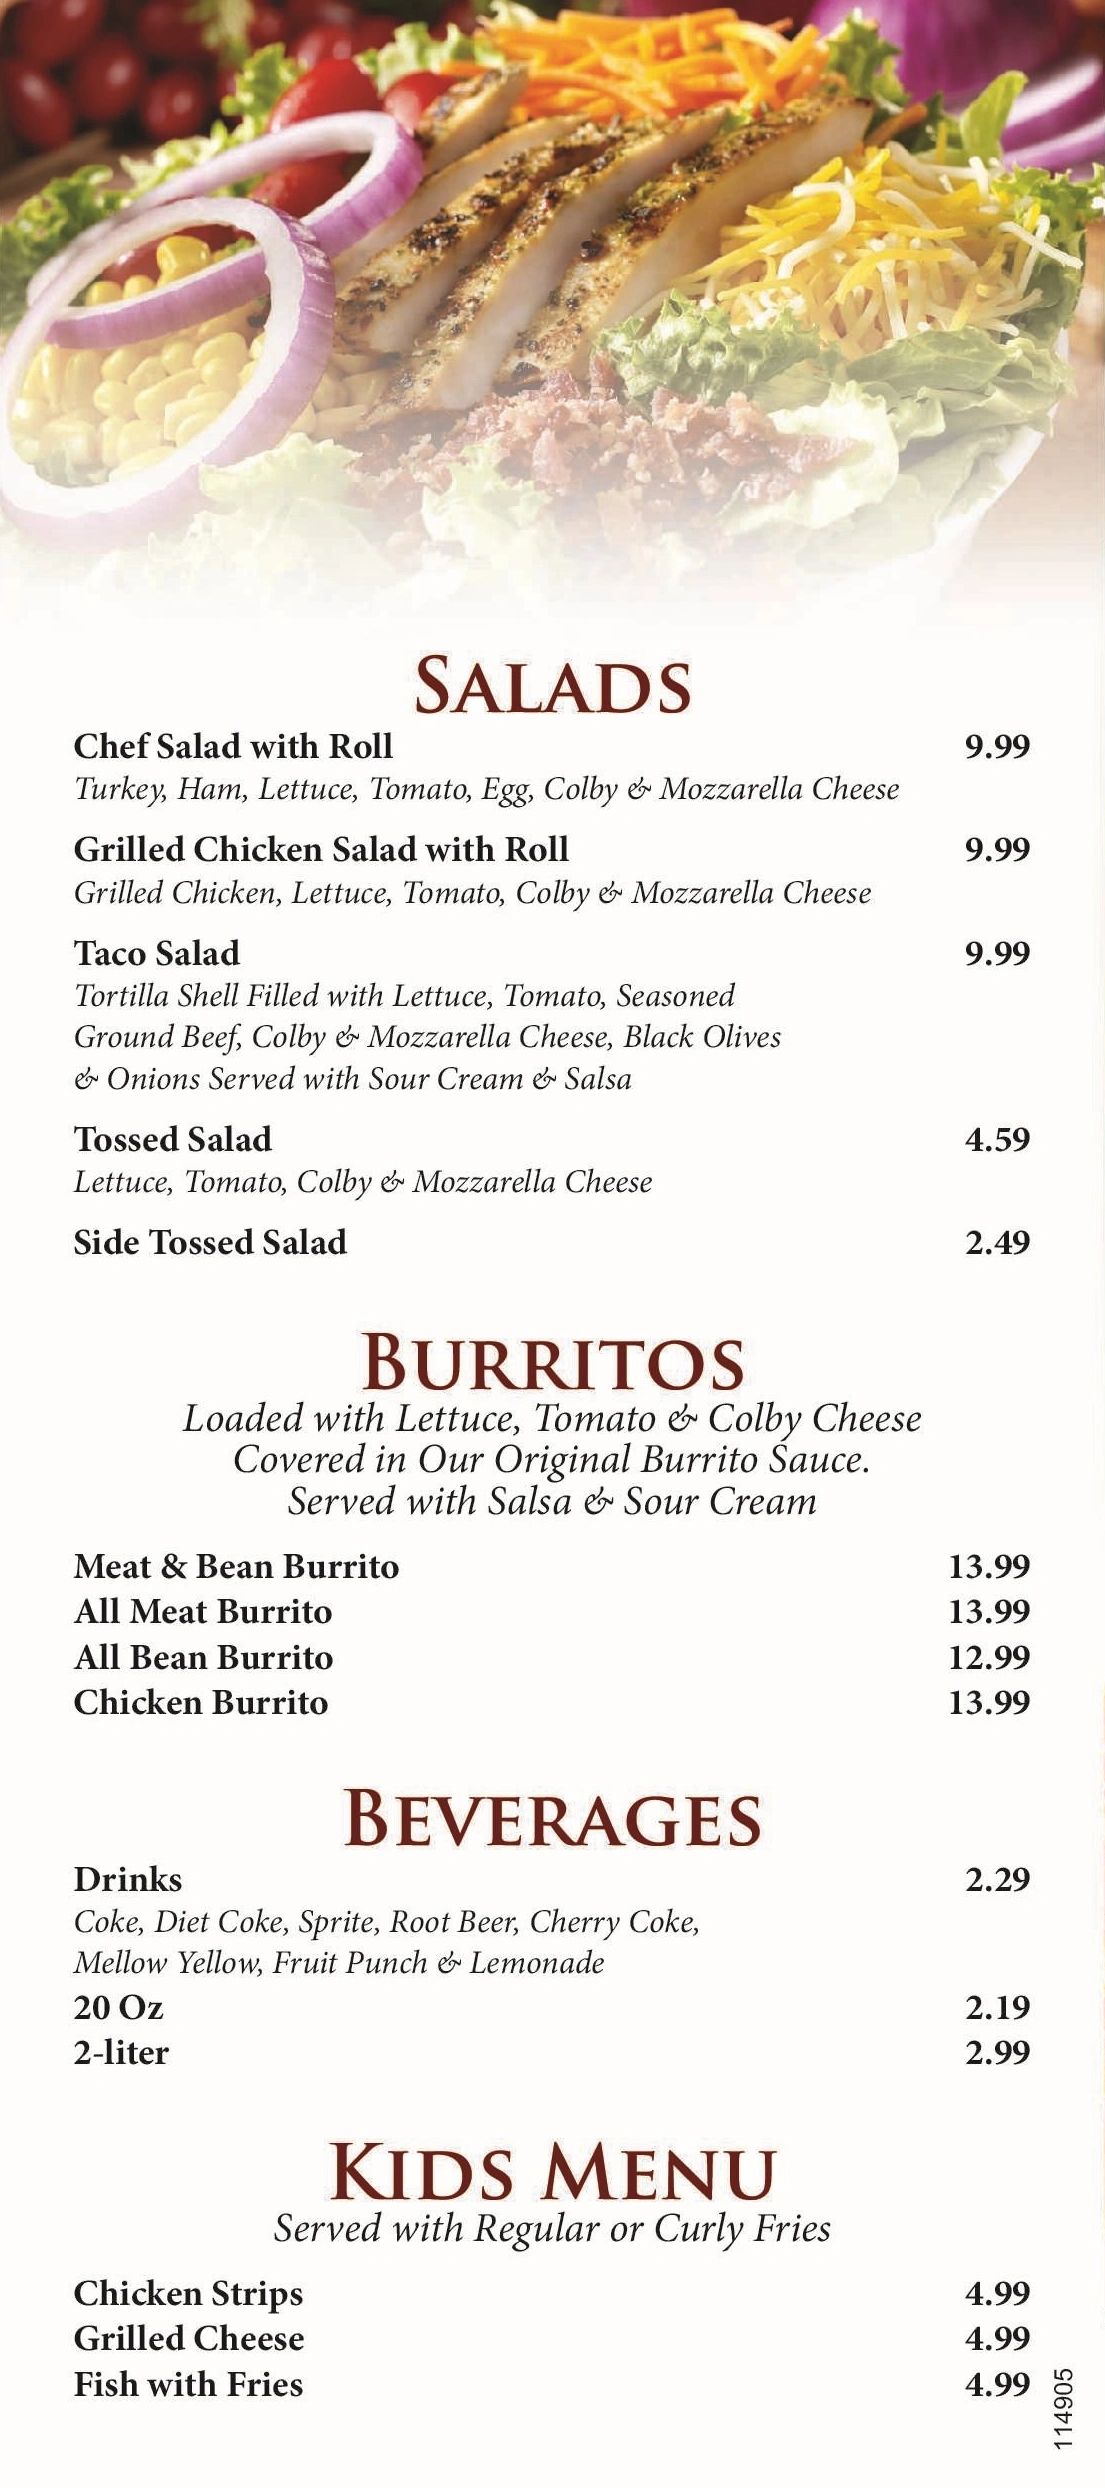 New salads & burrito menu